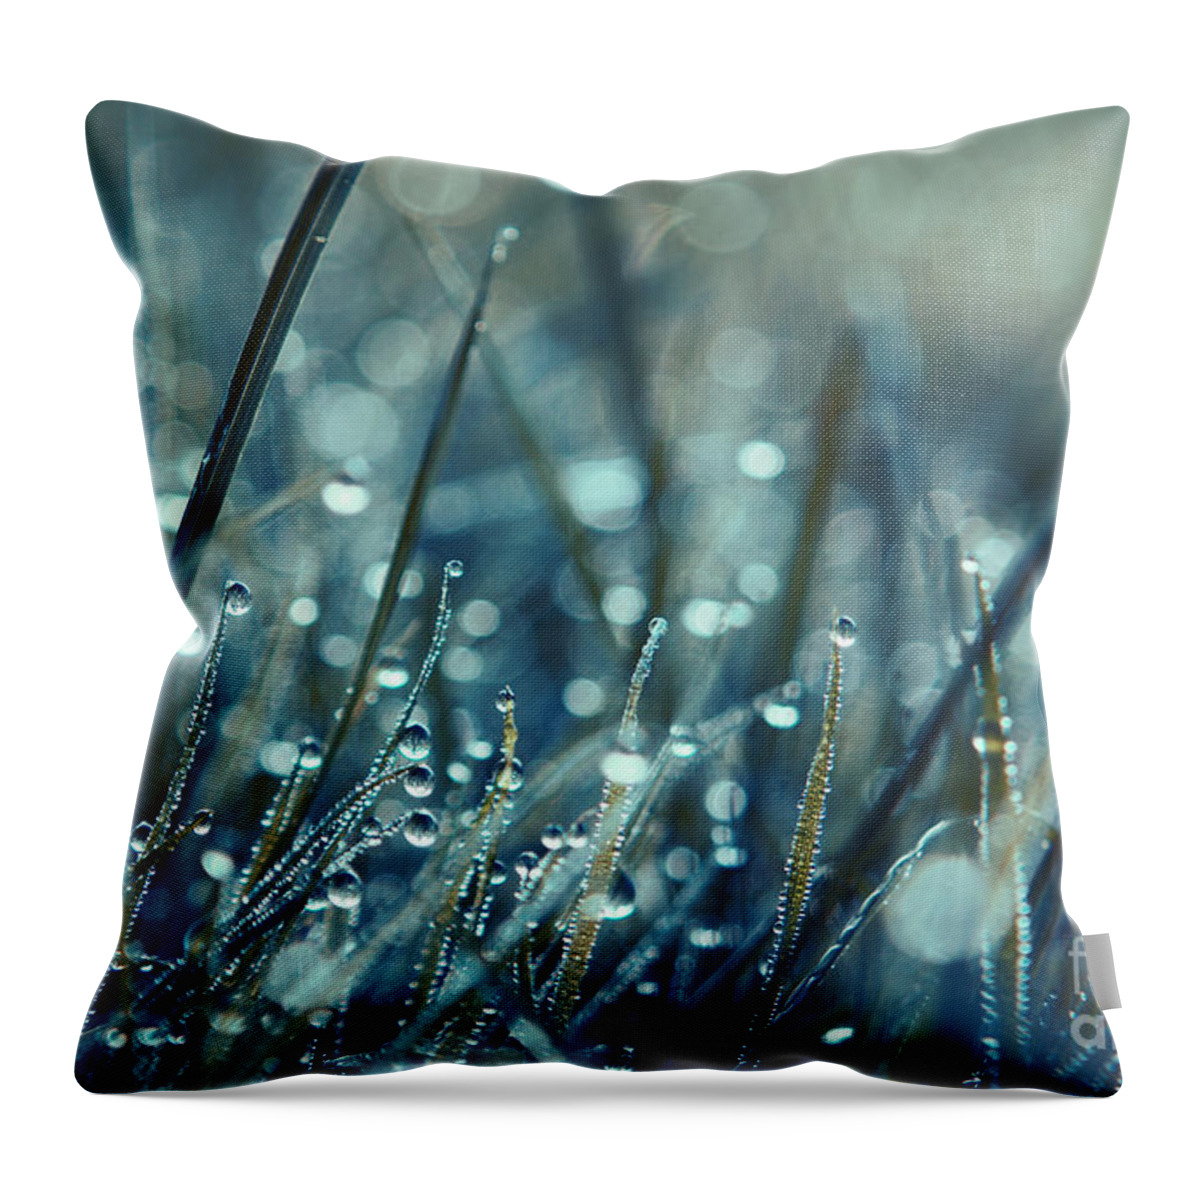 Rain Drops Throw Pillow featuring the photograph Mondo by Aimelle Ml